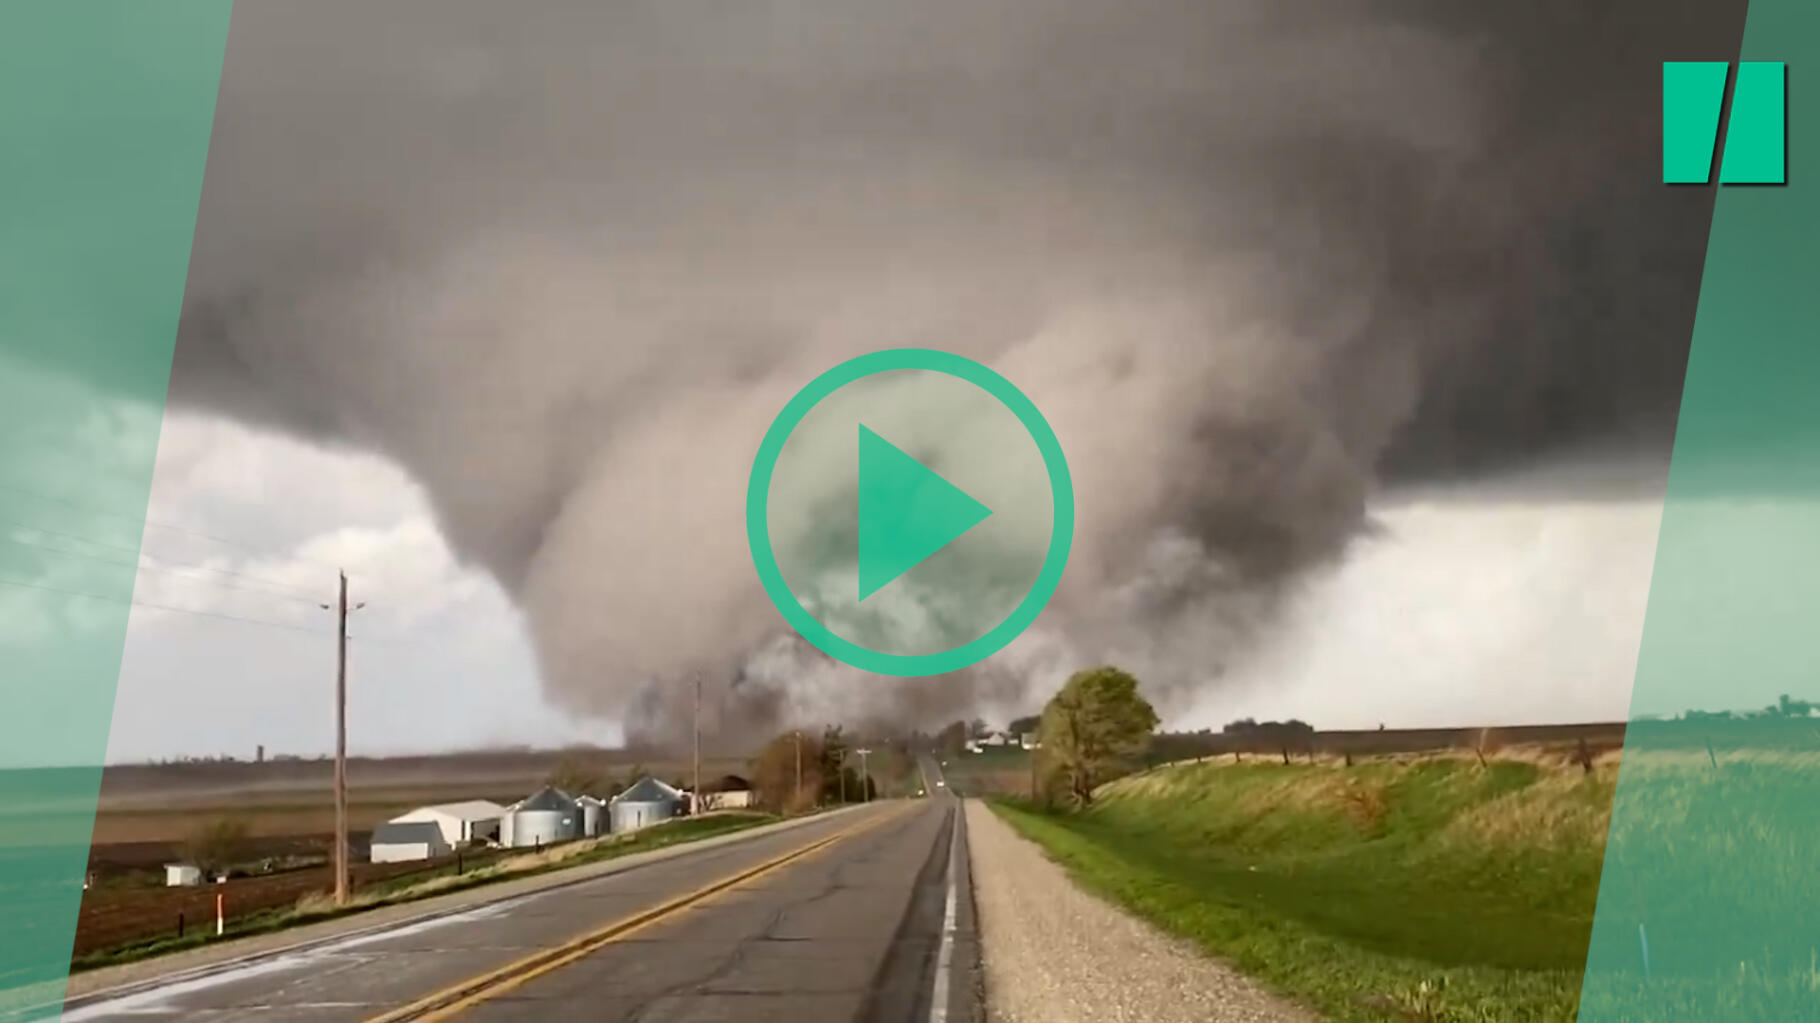 Bilder des Tornados, der in mehreren Städten in den Vereinigten Staaten beeindruckende Schäden anrichtete